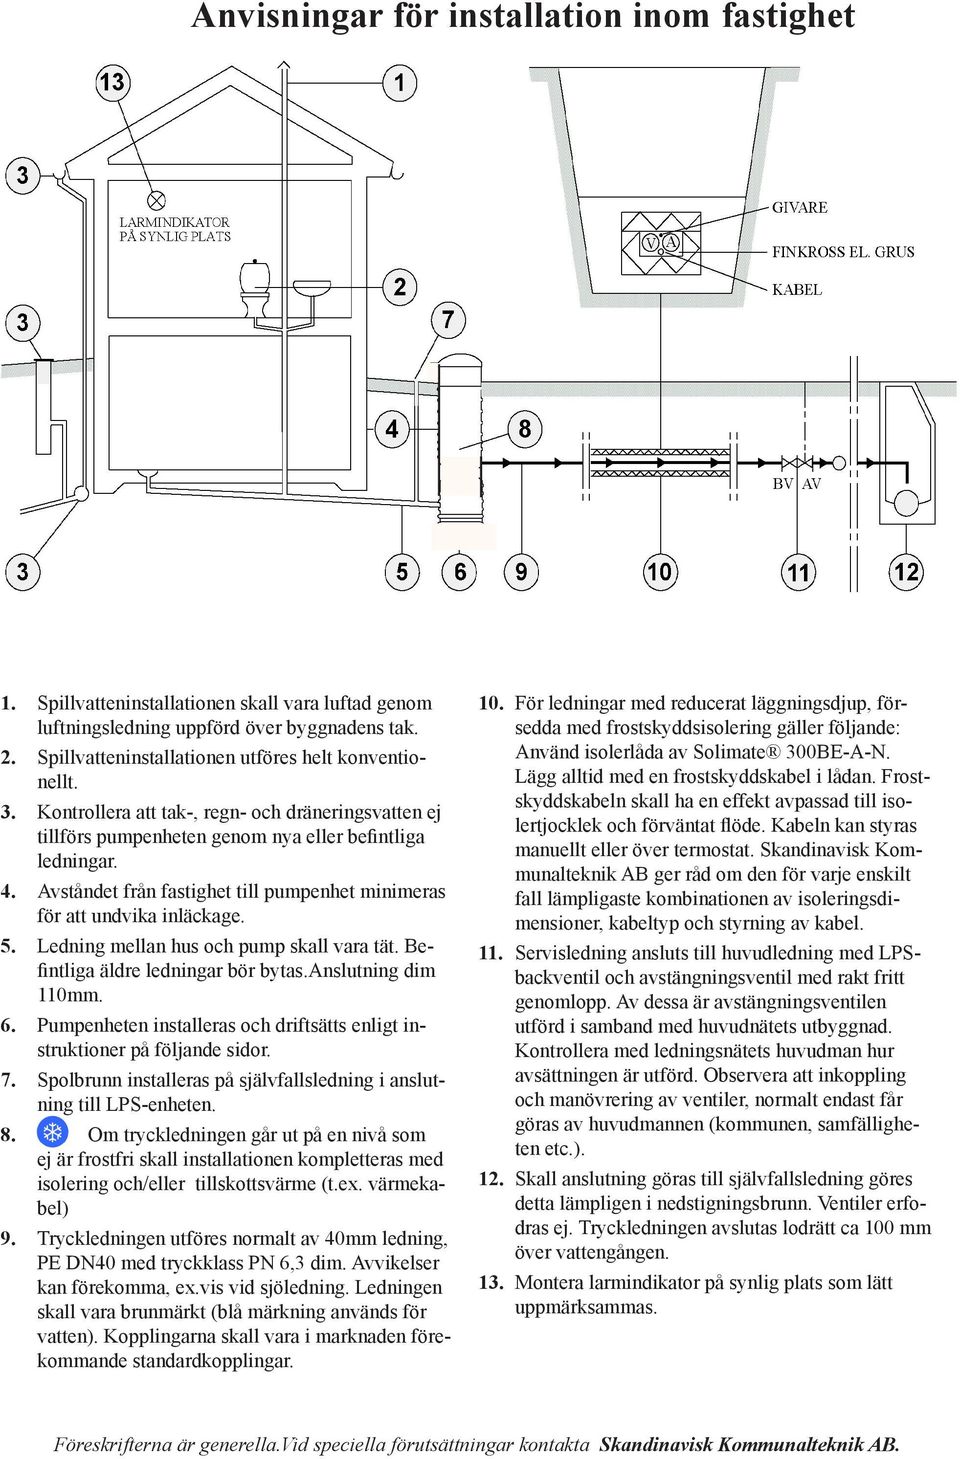 Ledning mellan hus och pump skall vara tät. Befintliga äldre ledningar bör bytas.anslutning dim 110mm. 6. Pumpenheten installeras och driftsätts enligt instruktioner på följande sidor. 7.